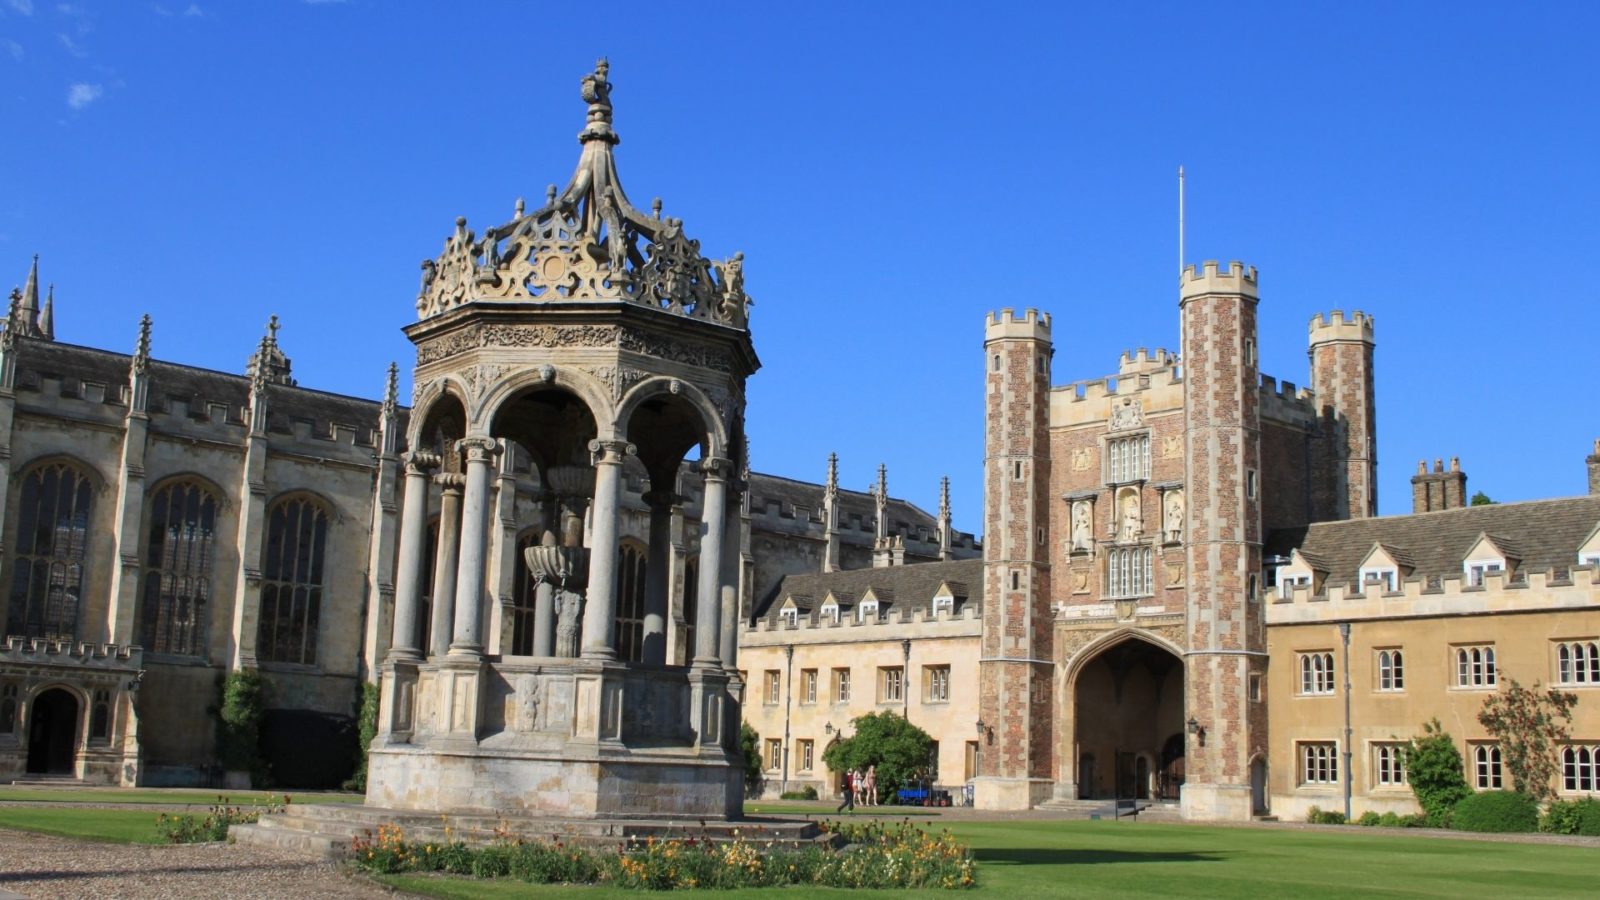 Trinity College Cambridge | University of Cambridge